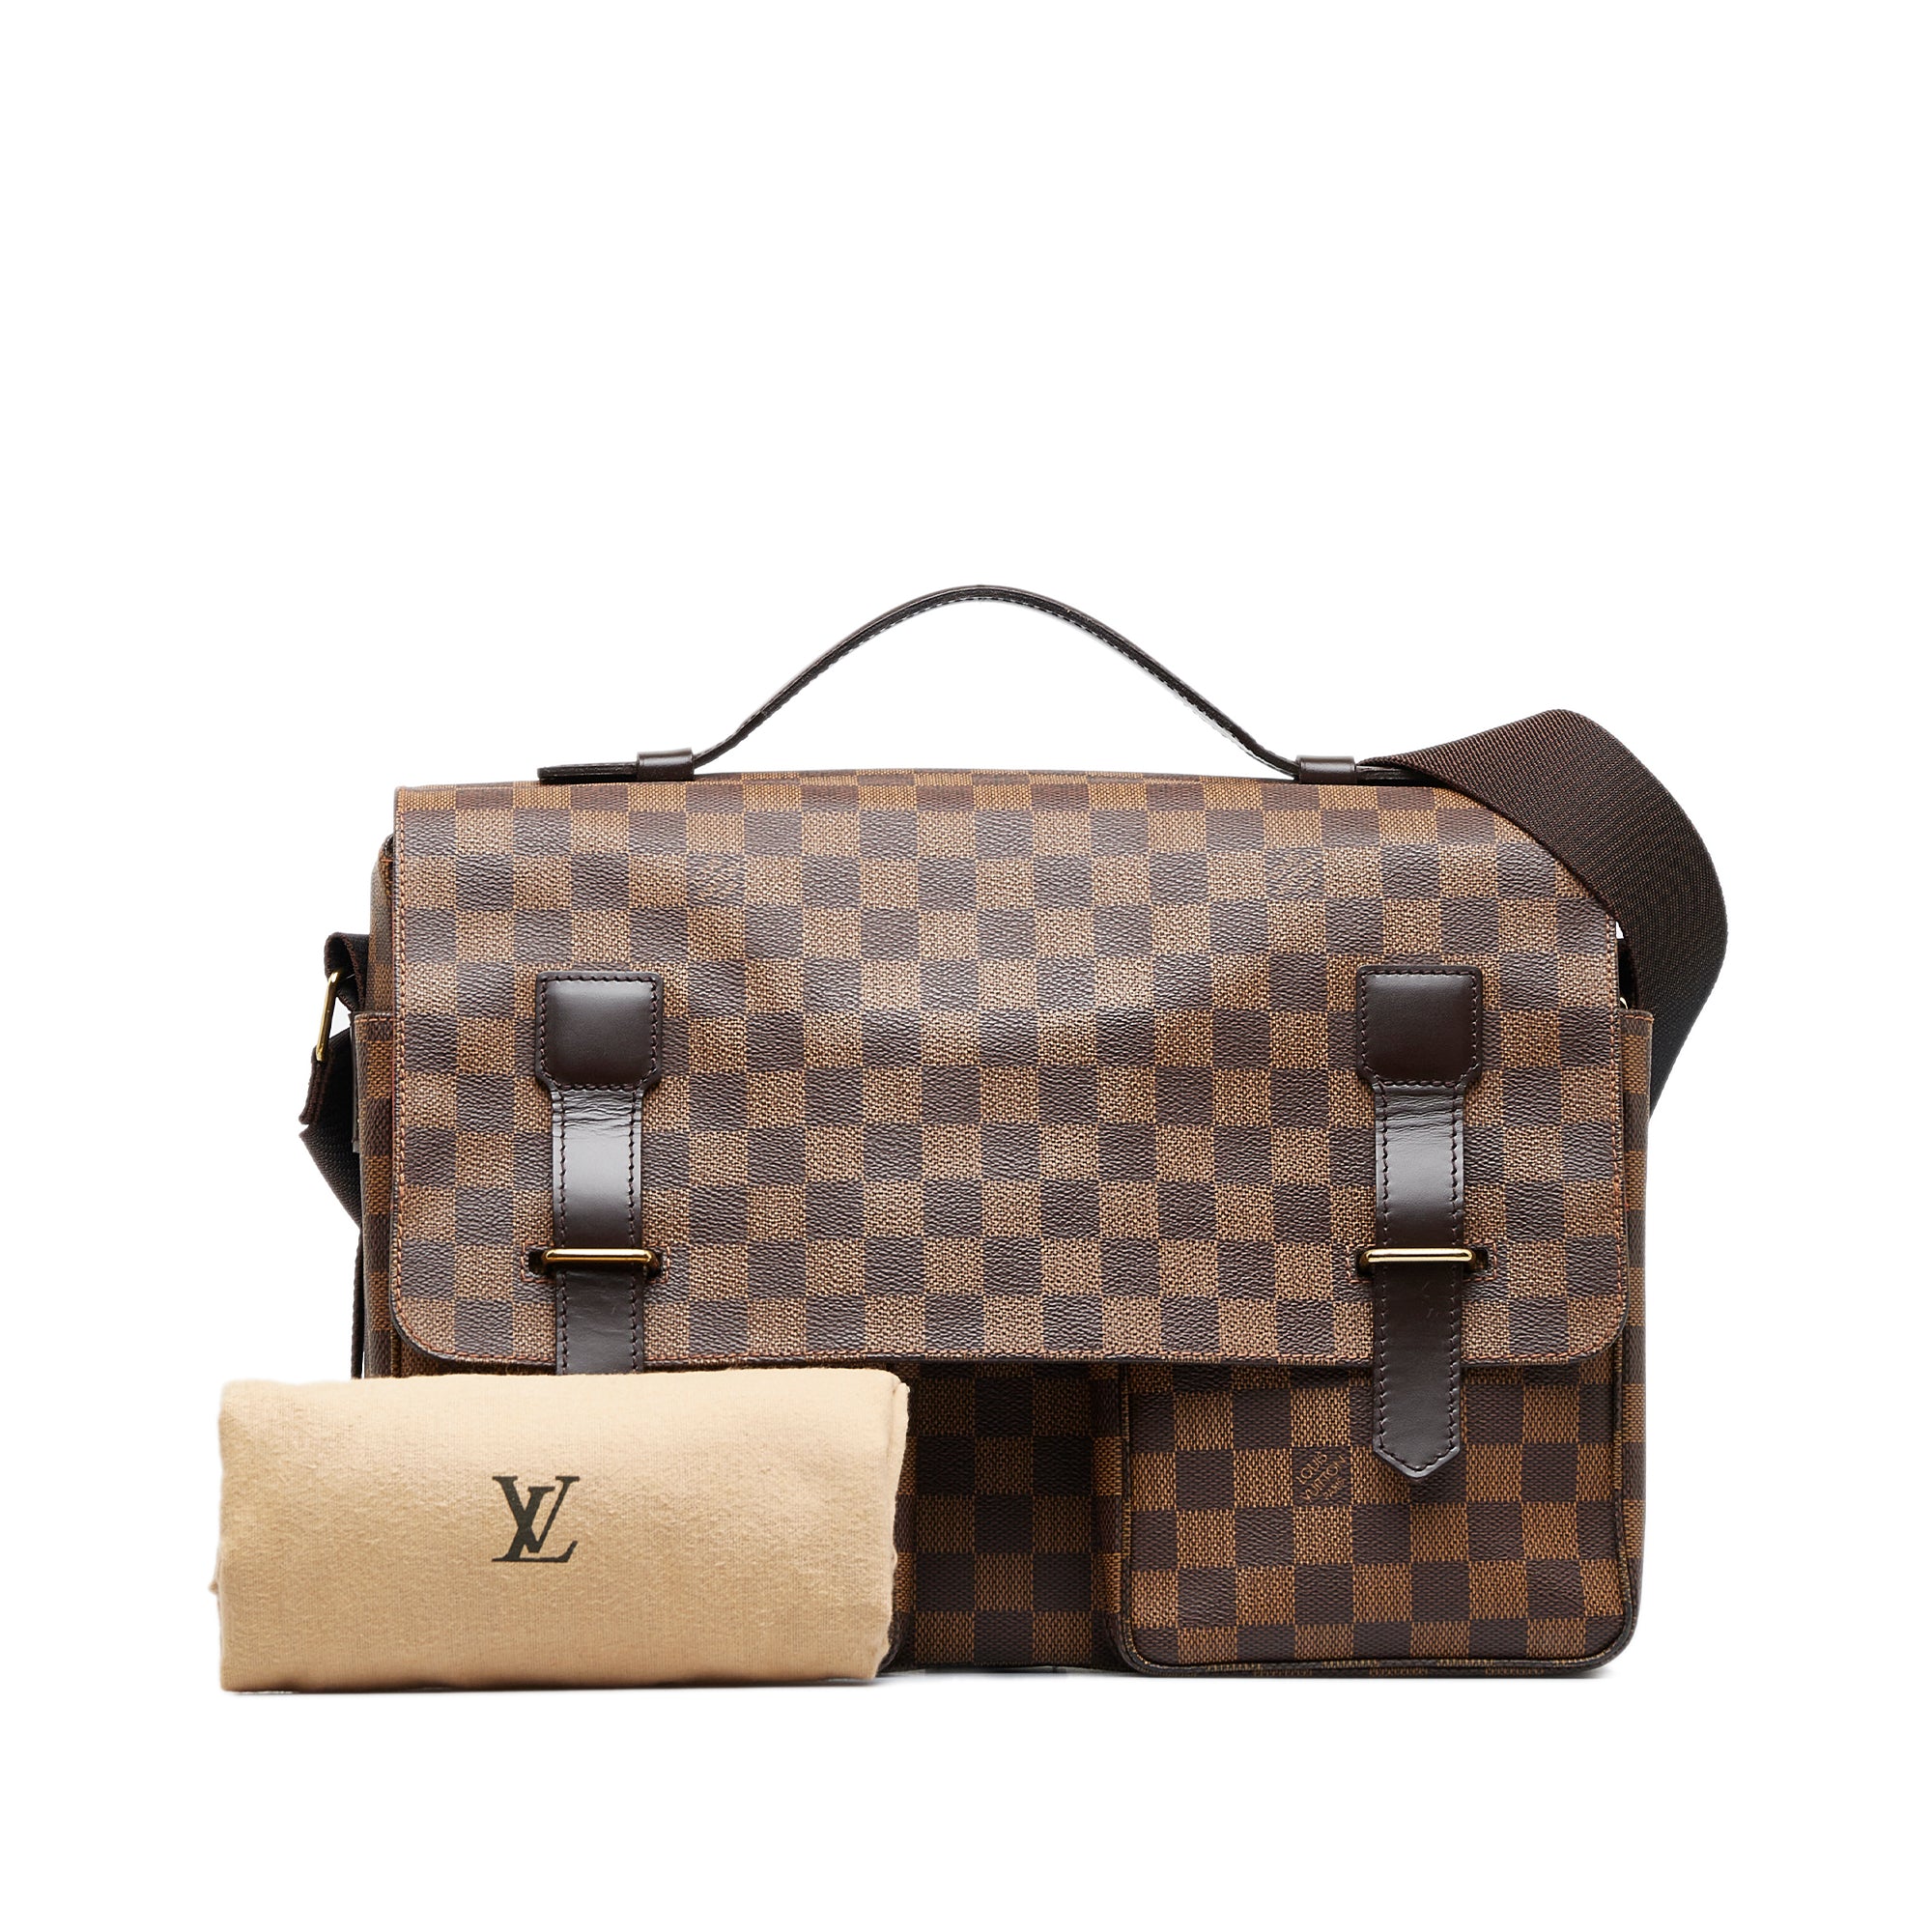 Louis Vuitton populäraste märket på second hand-marknaden